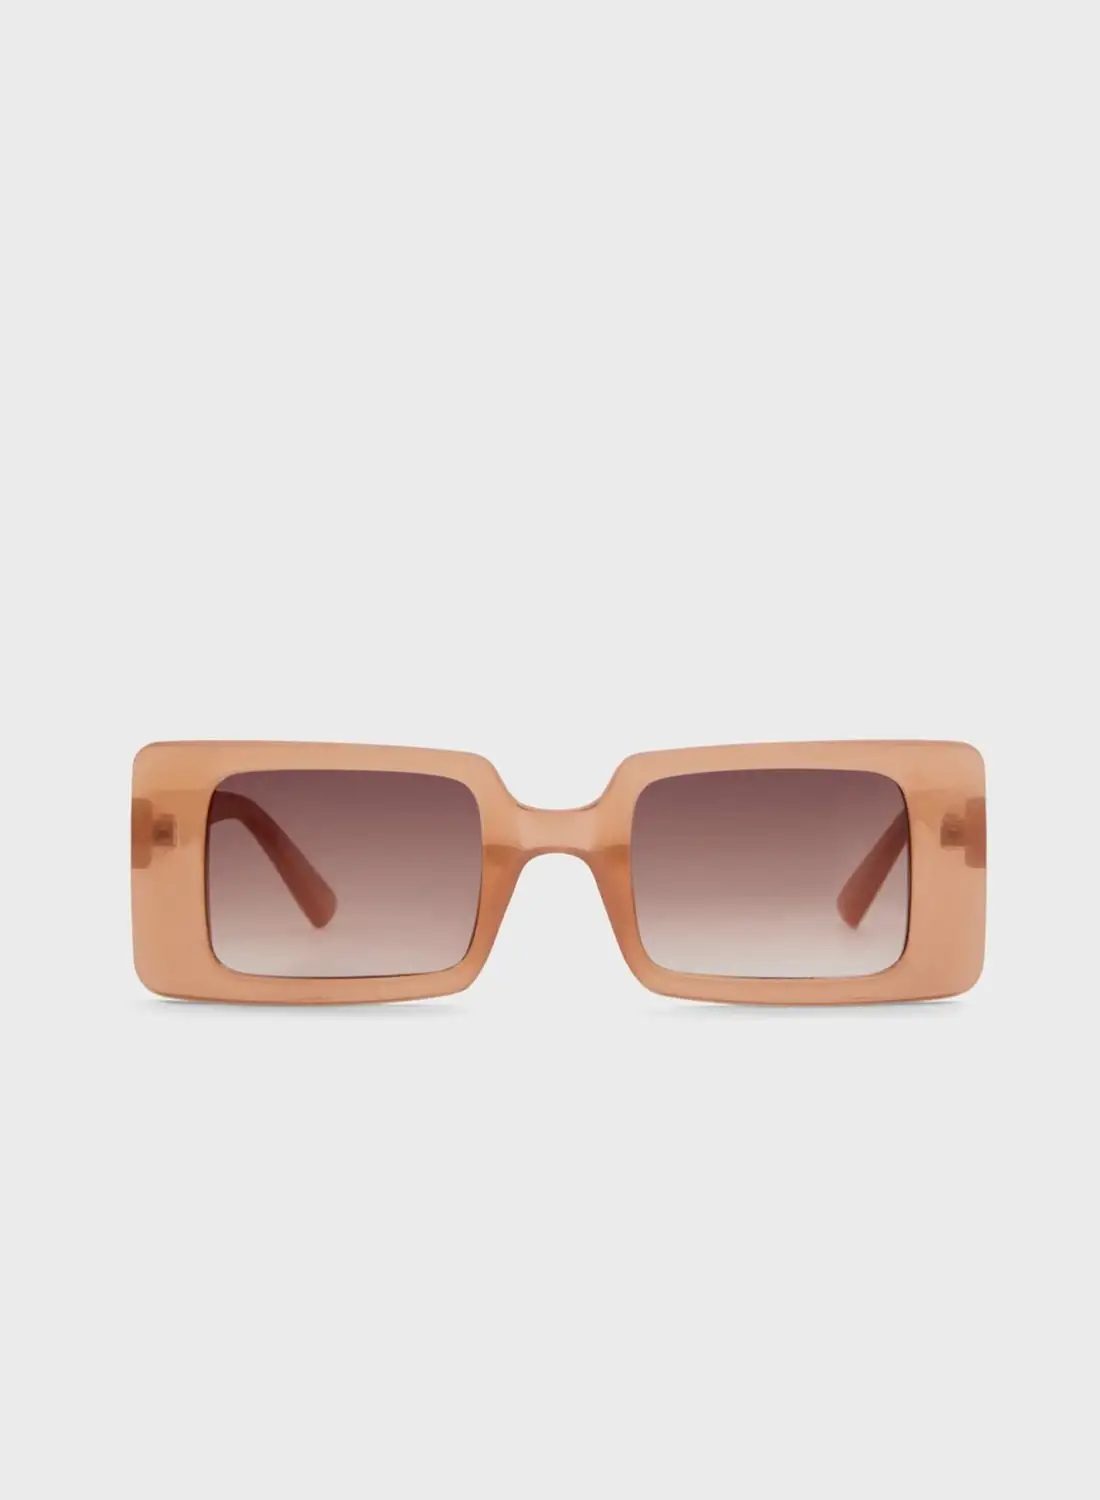 ALDO Cellia Sunglasses